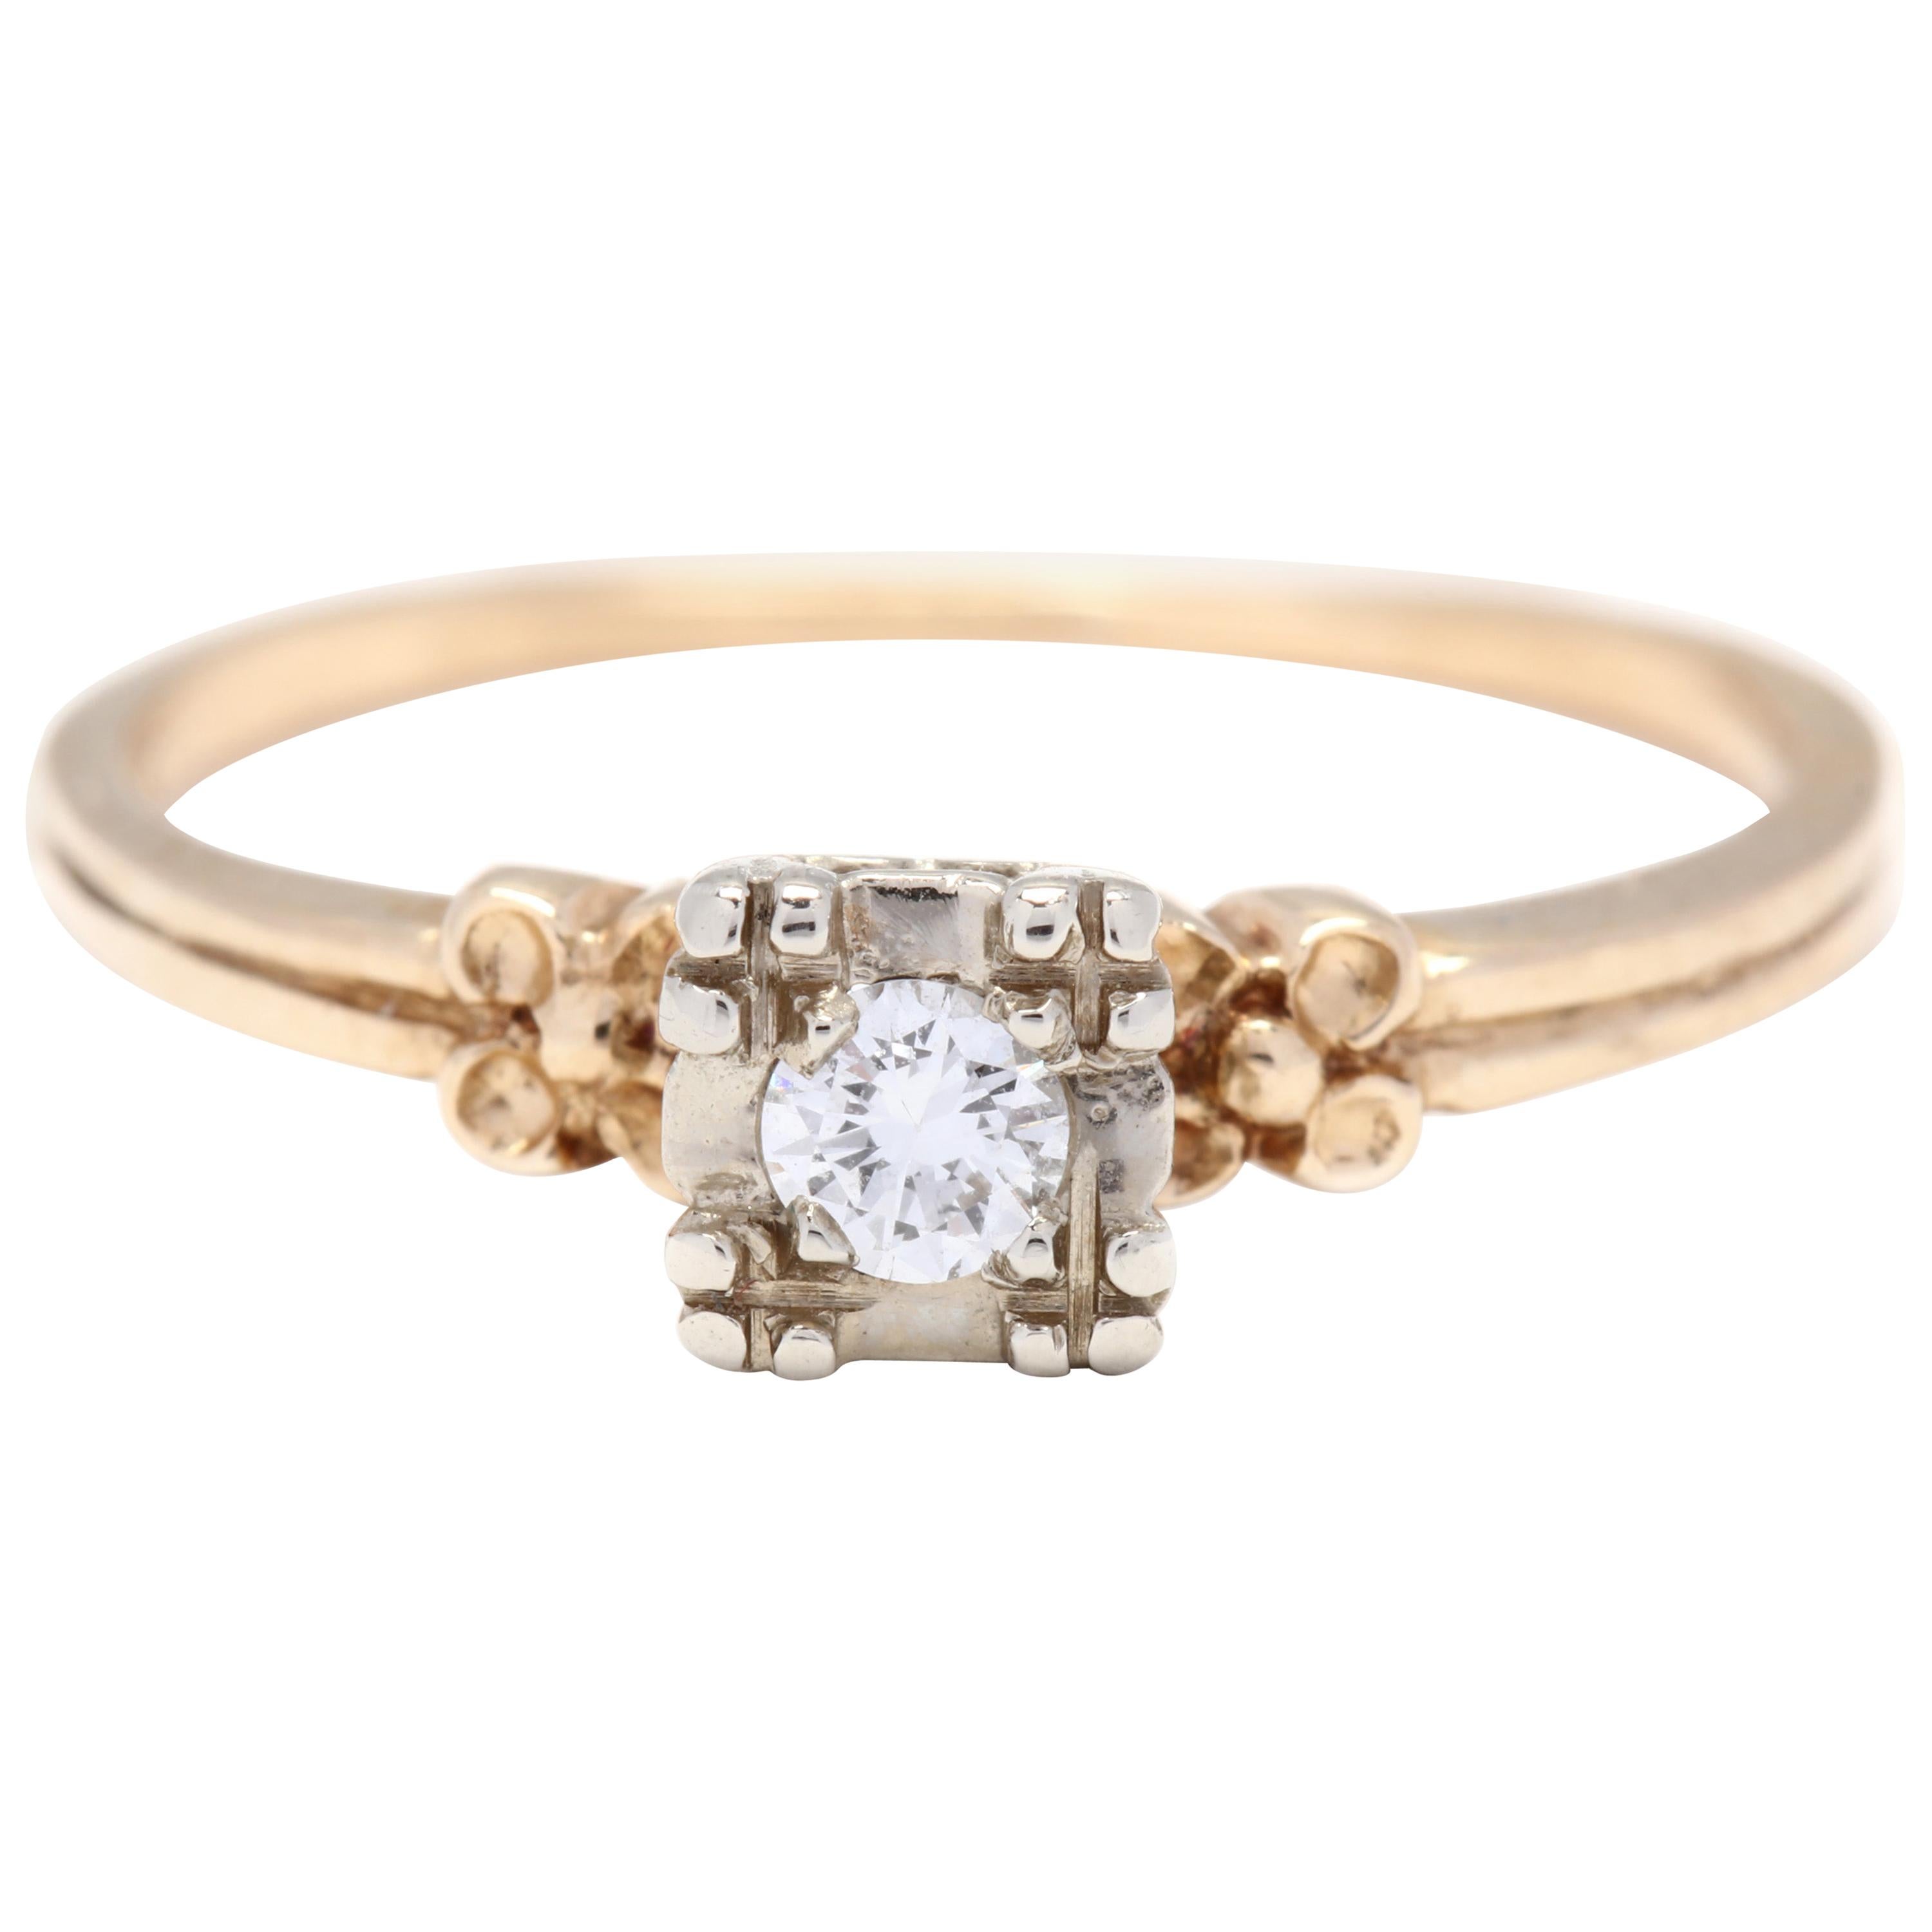 Retro 14 Karat White and Yellow Gold Diamond Engagement Ring